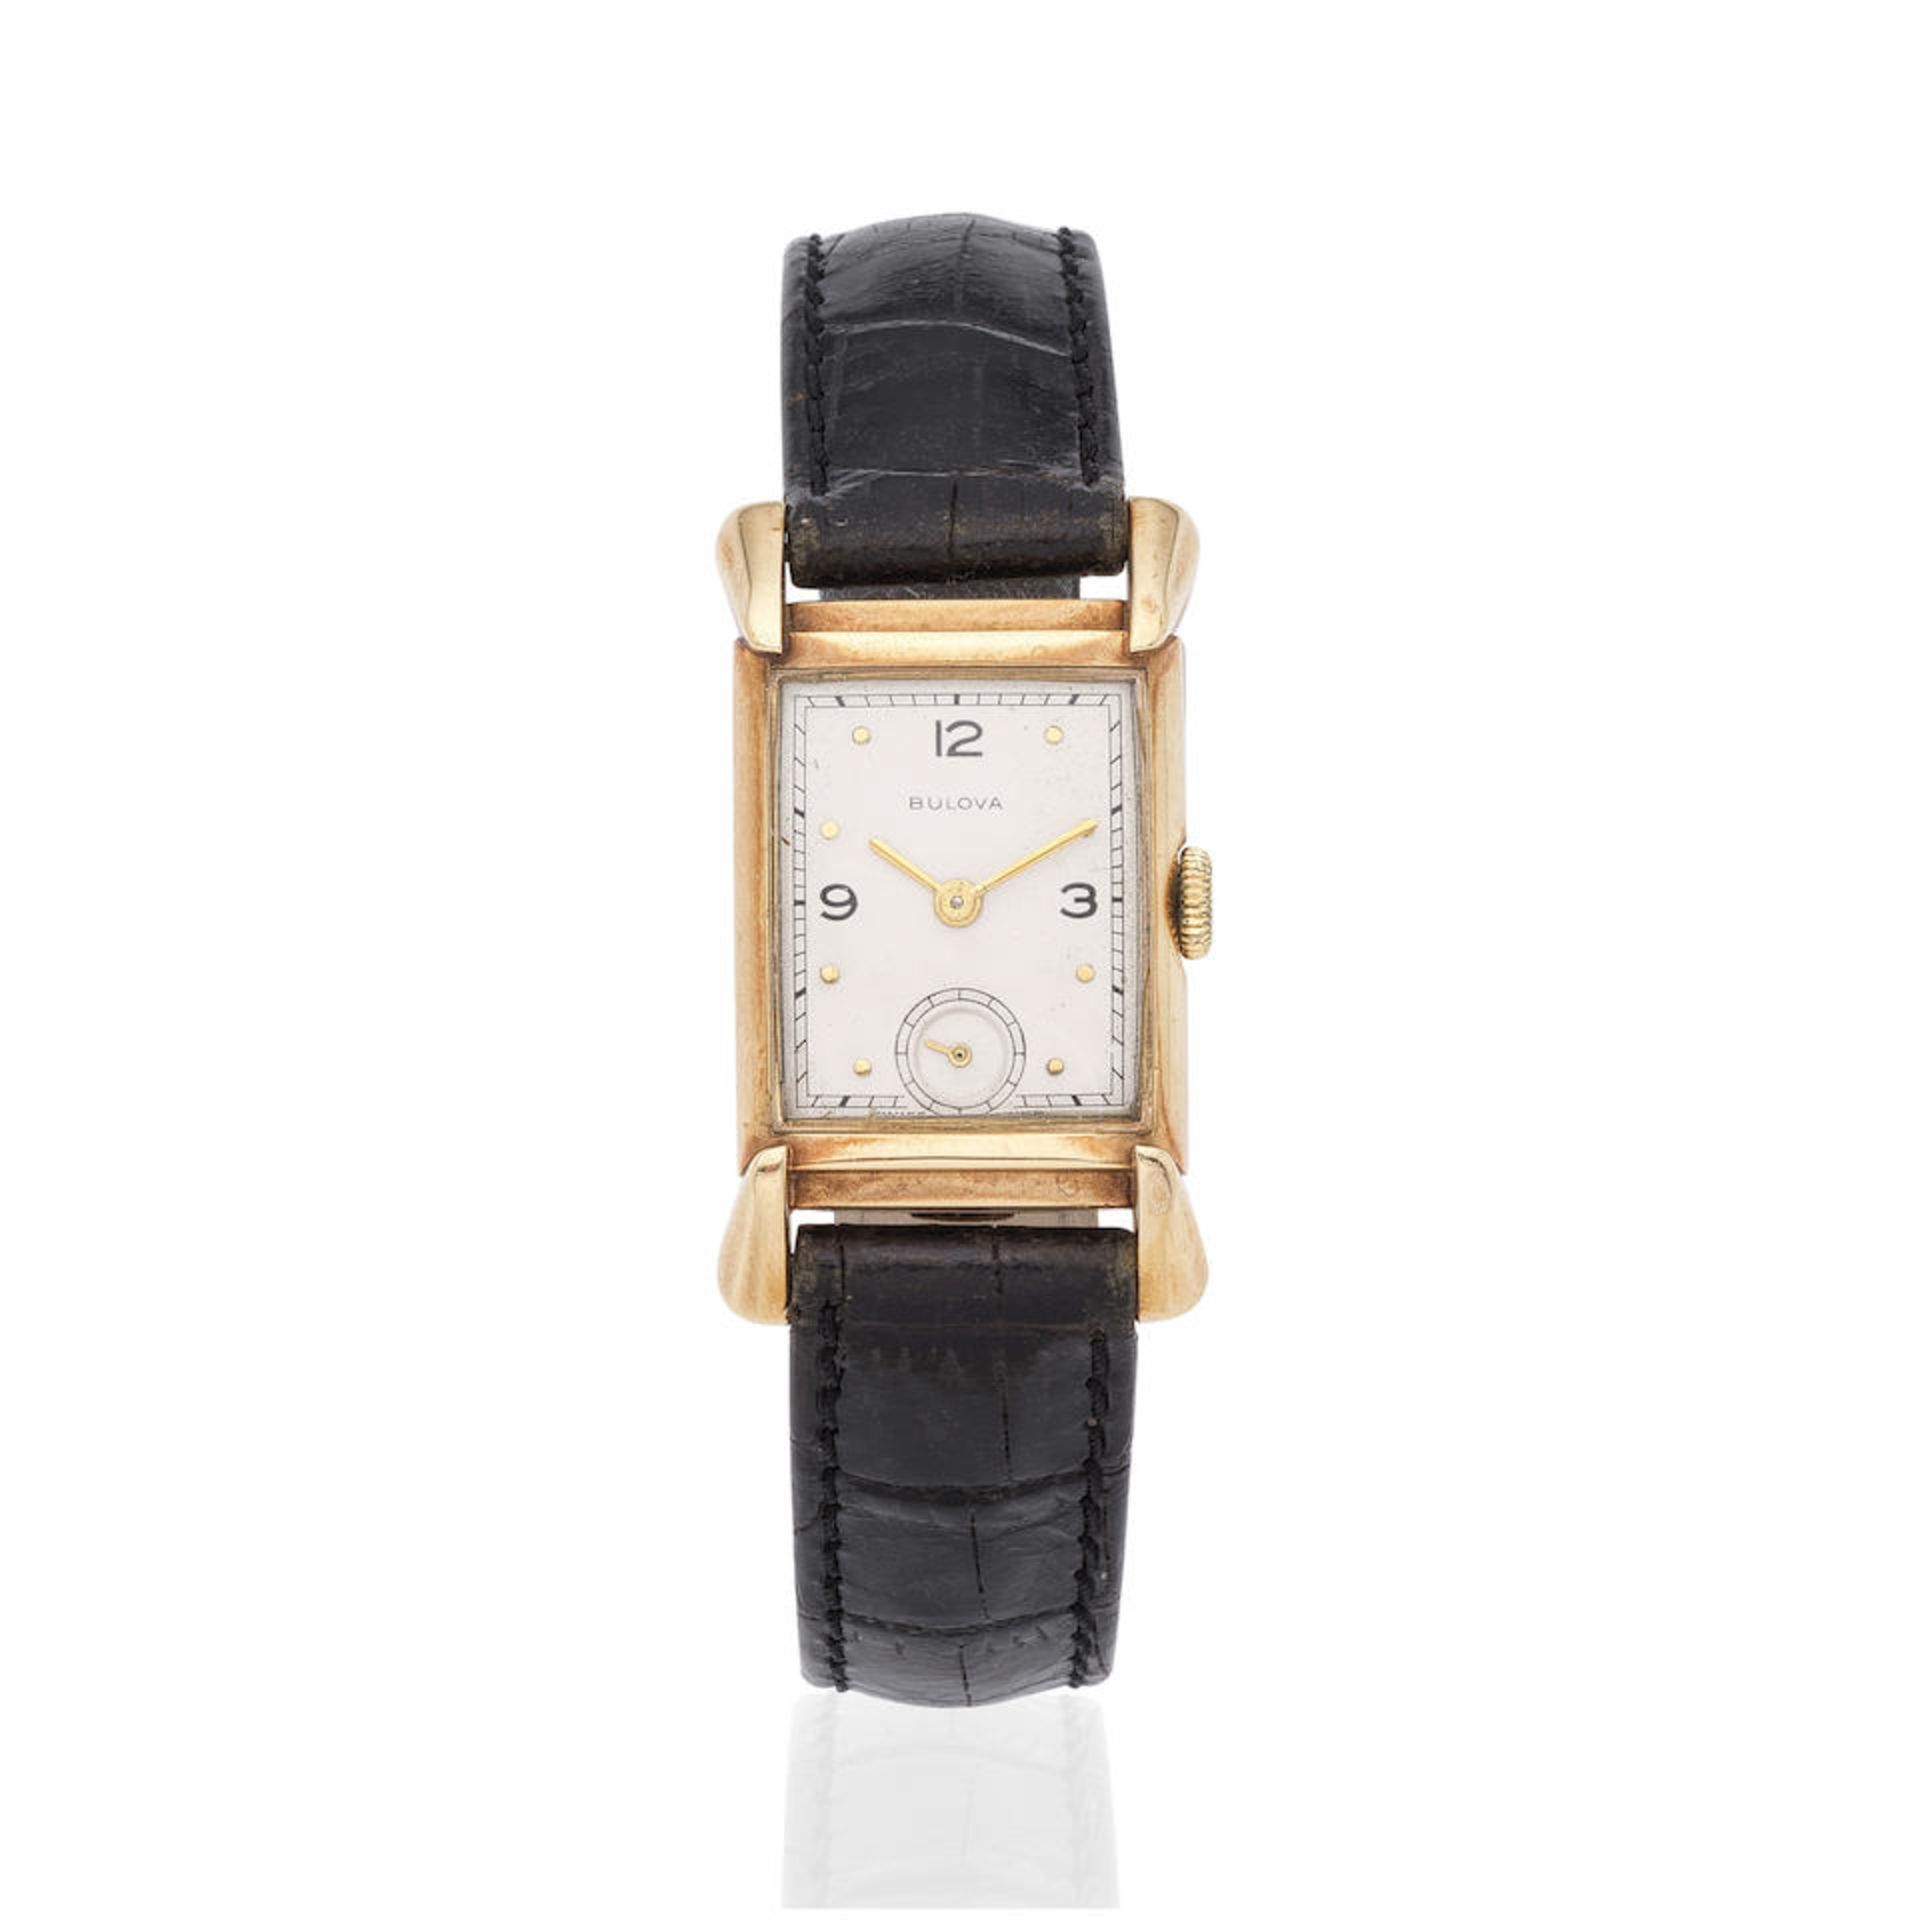 Bulova. A 14K gold manual wind wristwatch Bulova. Montre bracelet en or jaune 14K (585) mouvemen...